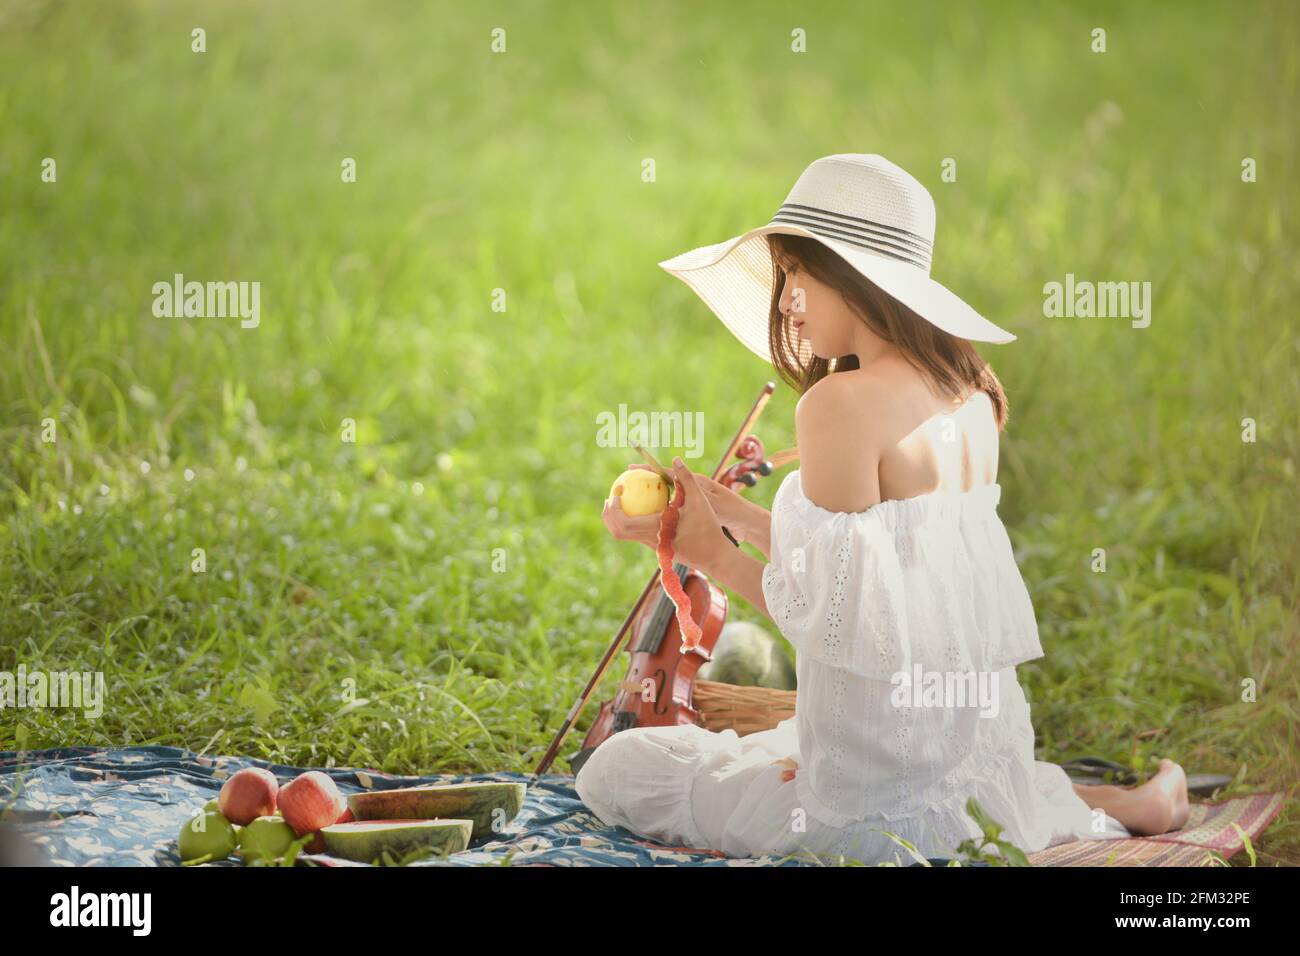 Frau, die auf einer Picknickdecke sitzt und einen Apfel schält, Thailand Stockfoto